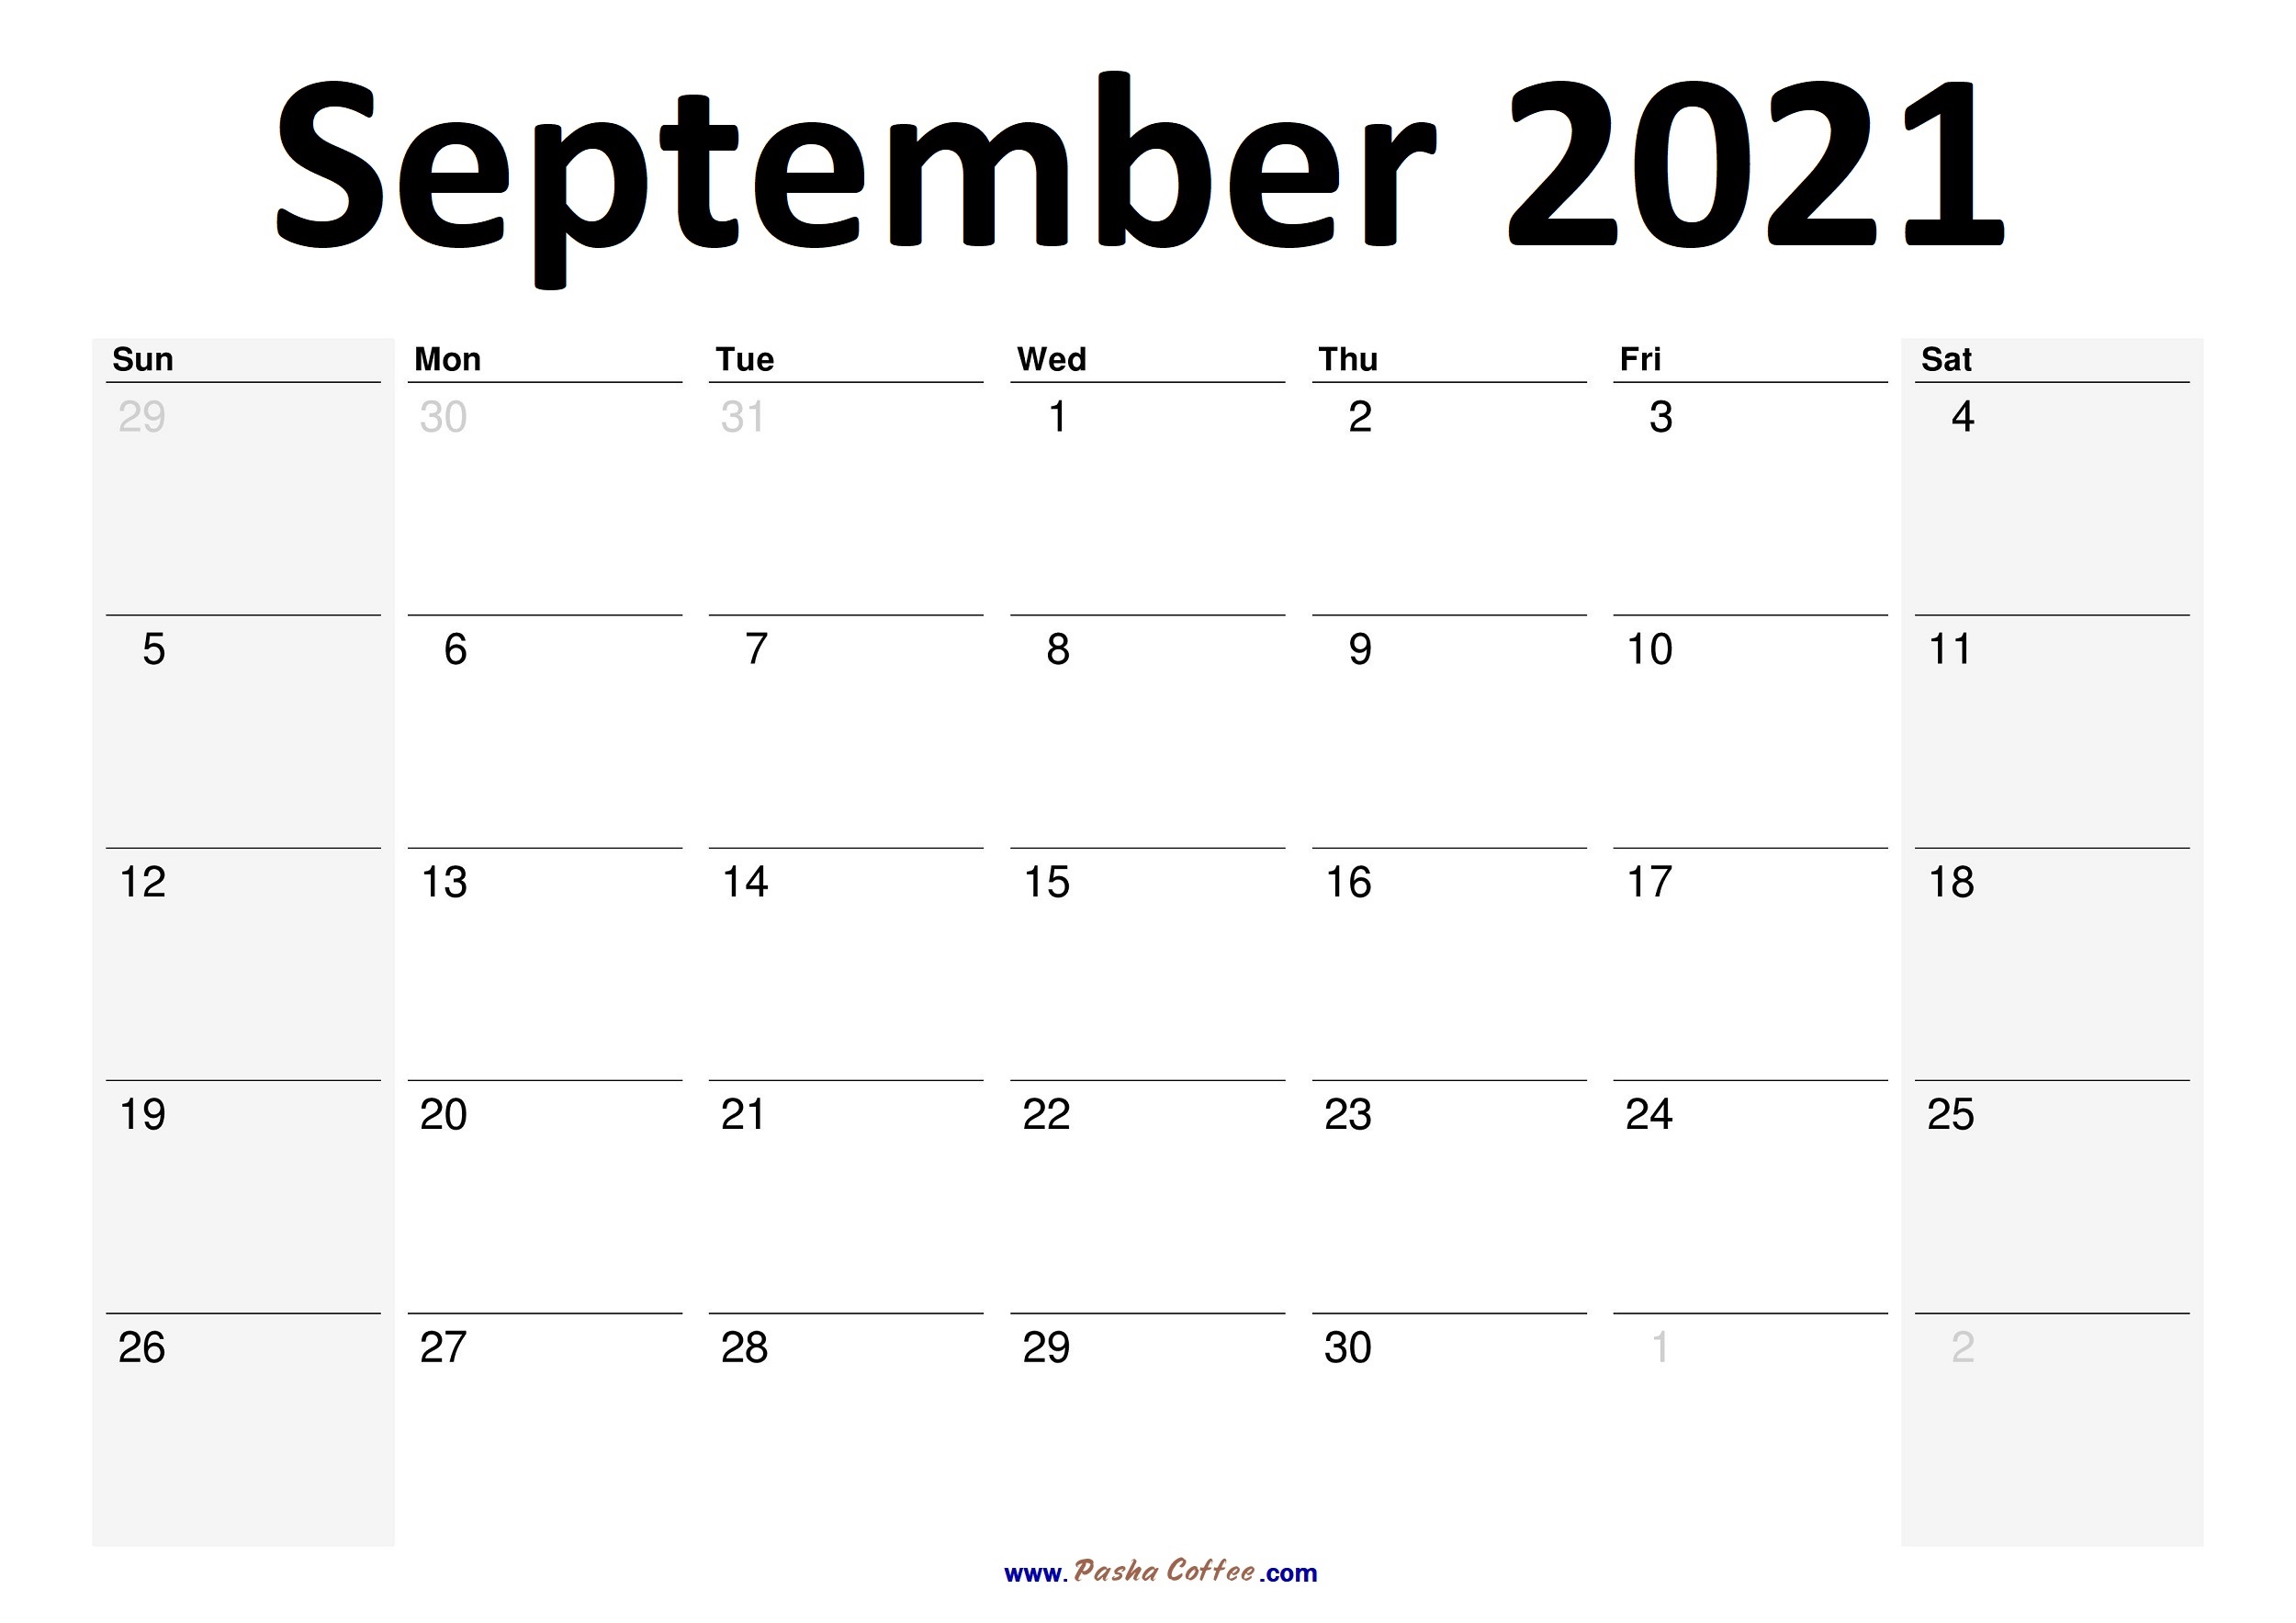 2021-September-Calendar-Planner01